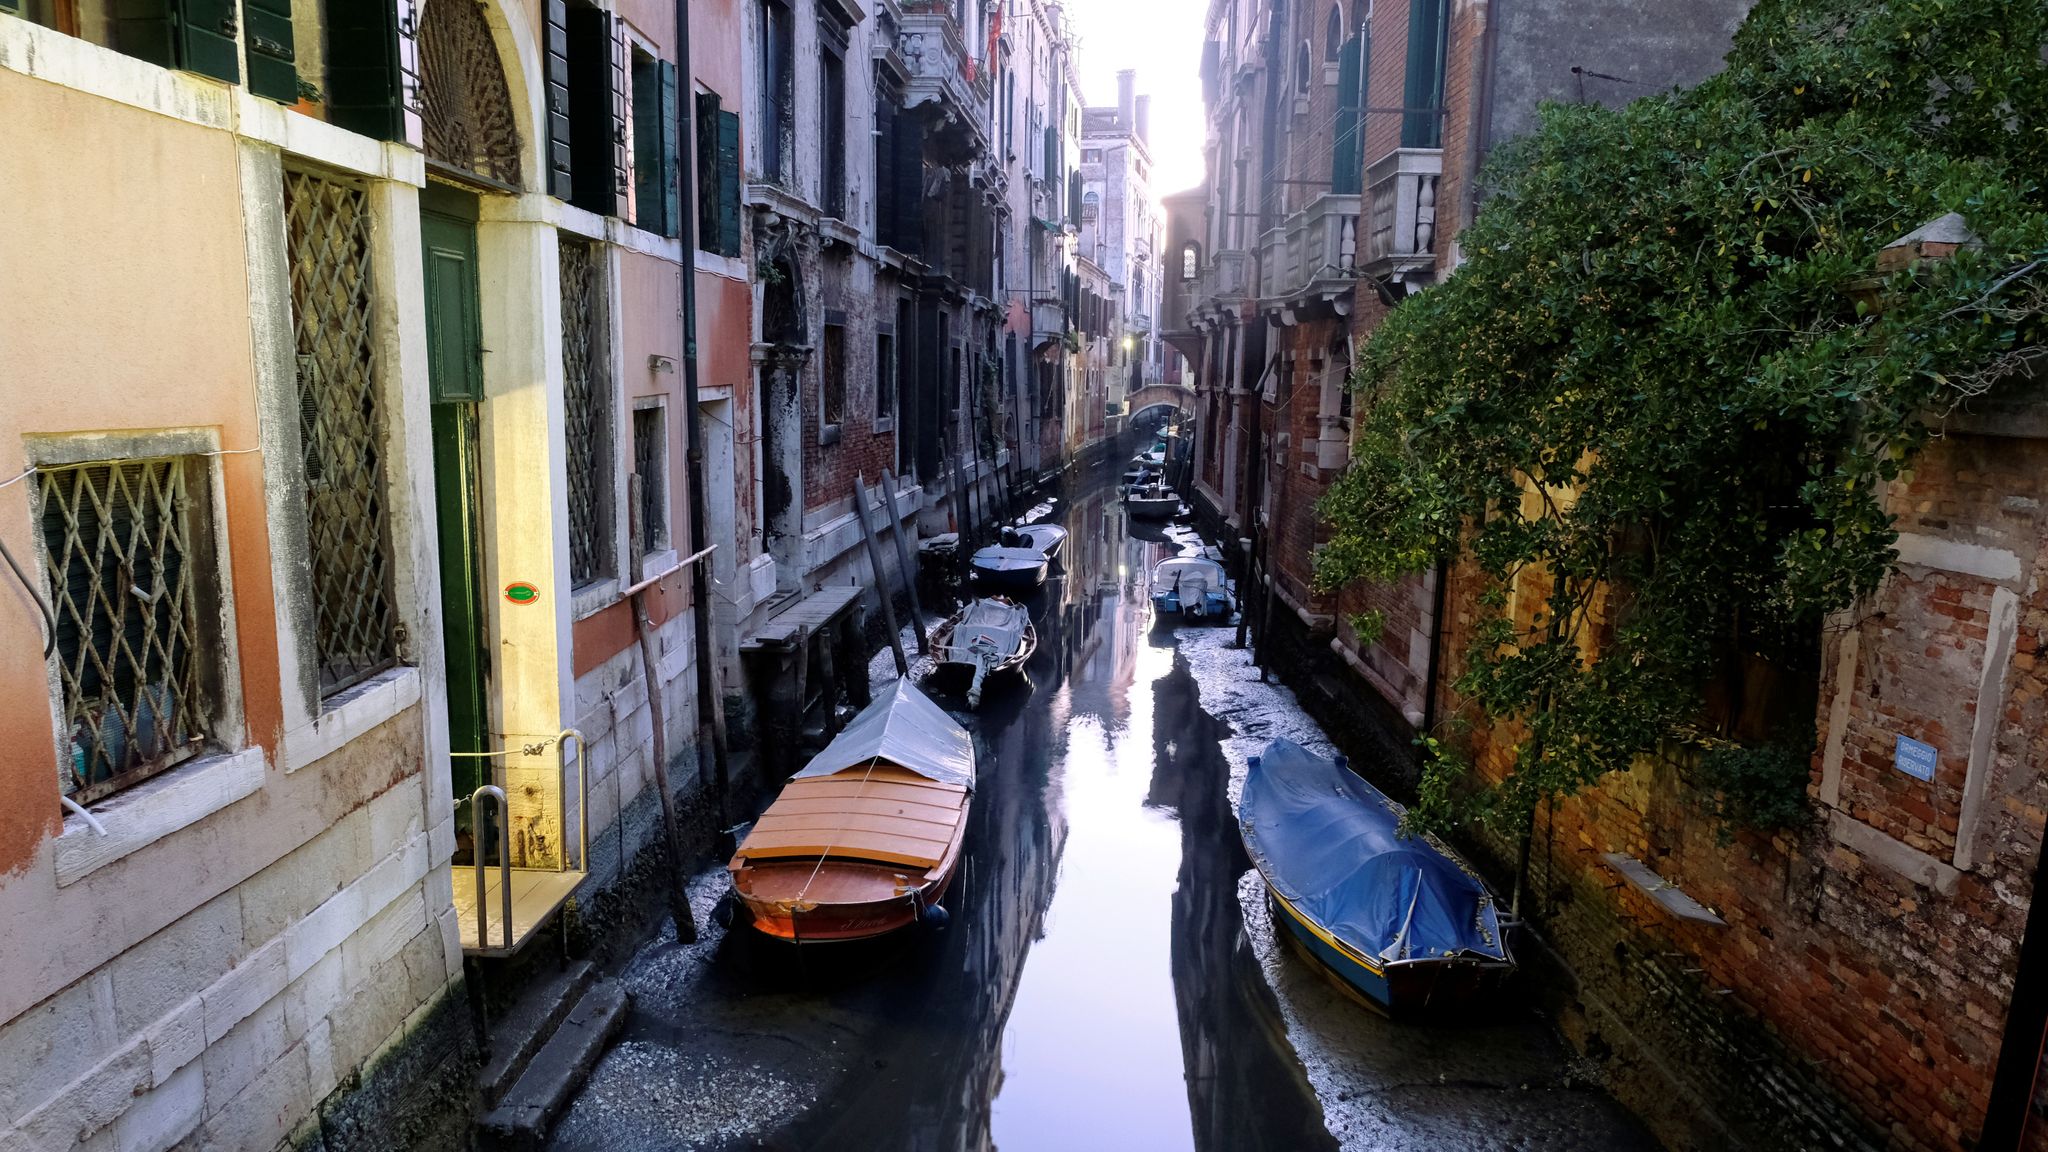 Каналы венеции фото